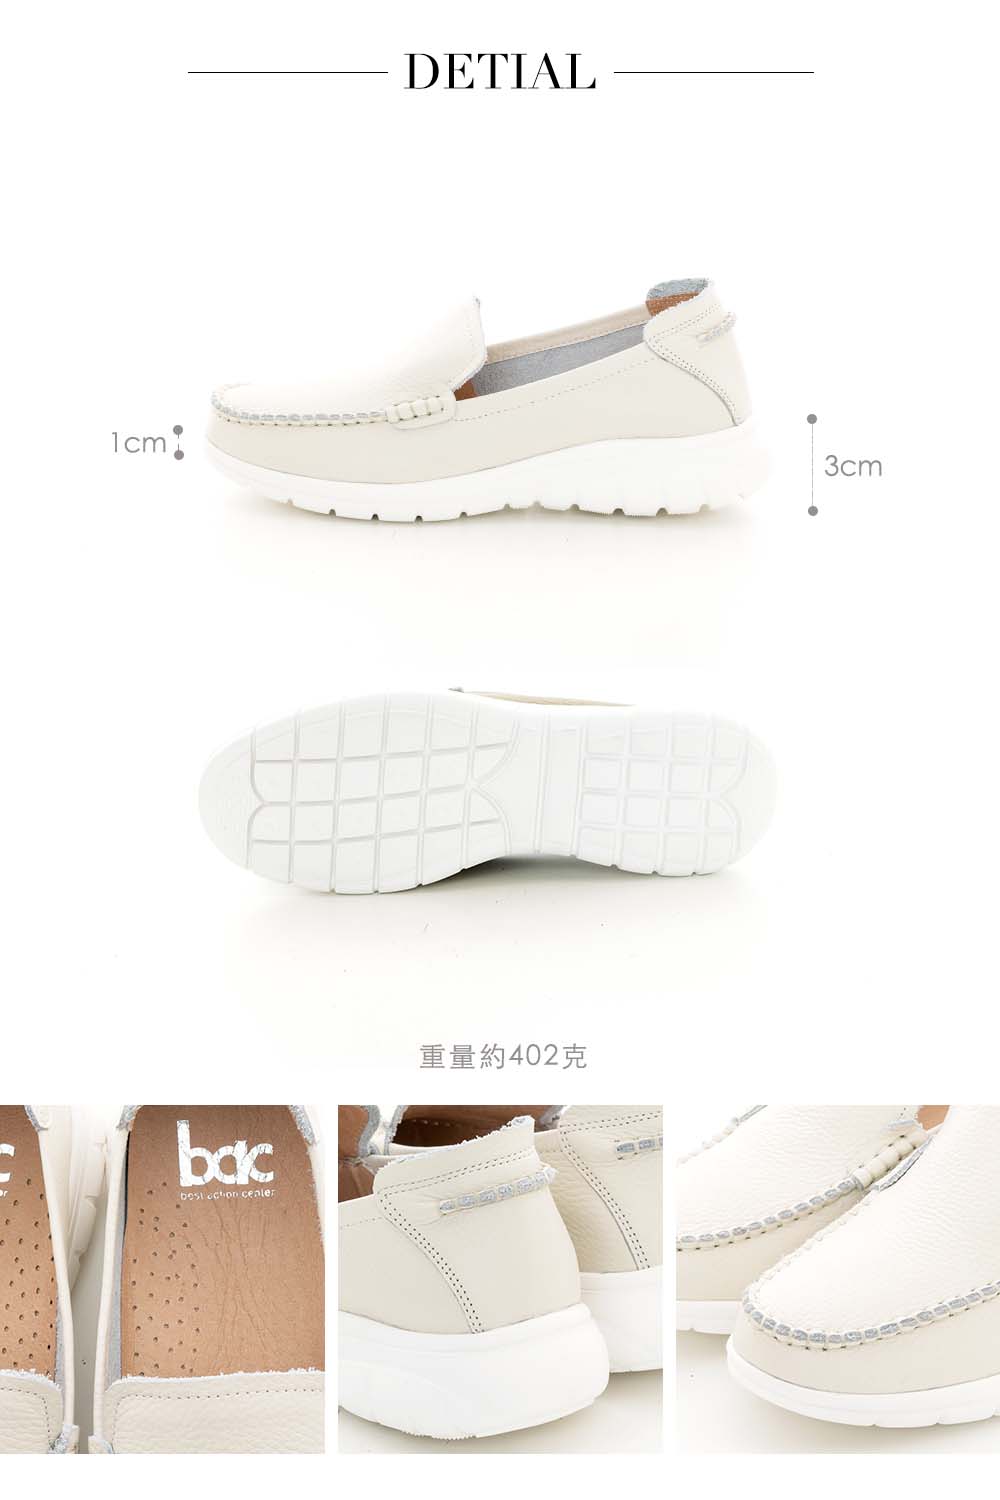 bac 輕量化彈力休閒鞋(米白色)優惠推薦